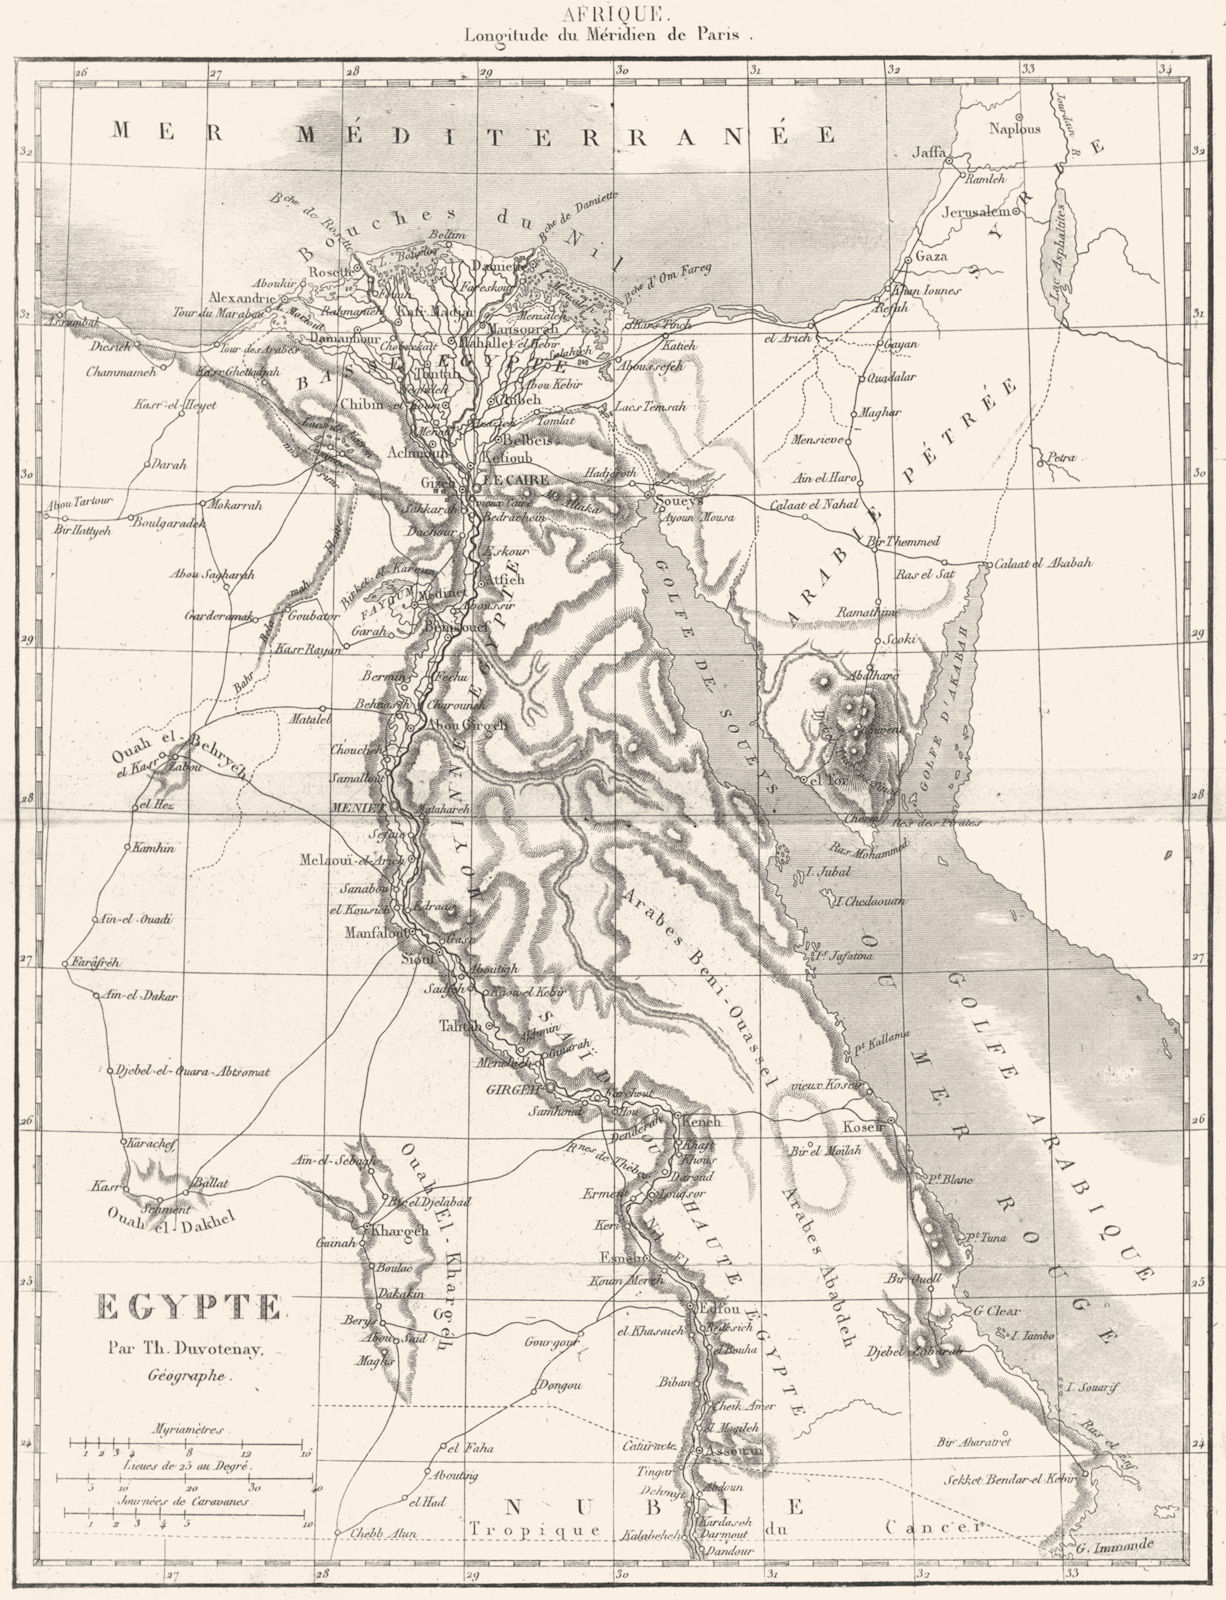 EGYPT. Afrique Africa. Egypte 1875 old antique vintage map plan chart